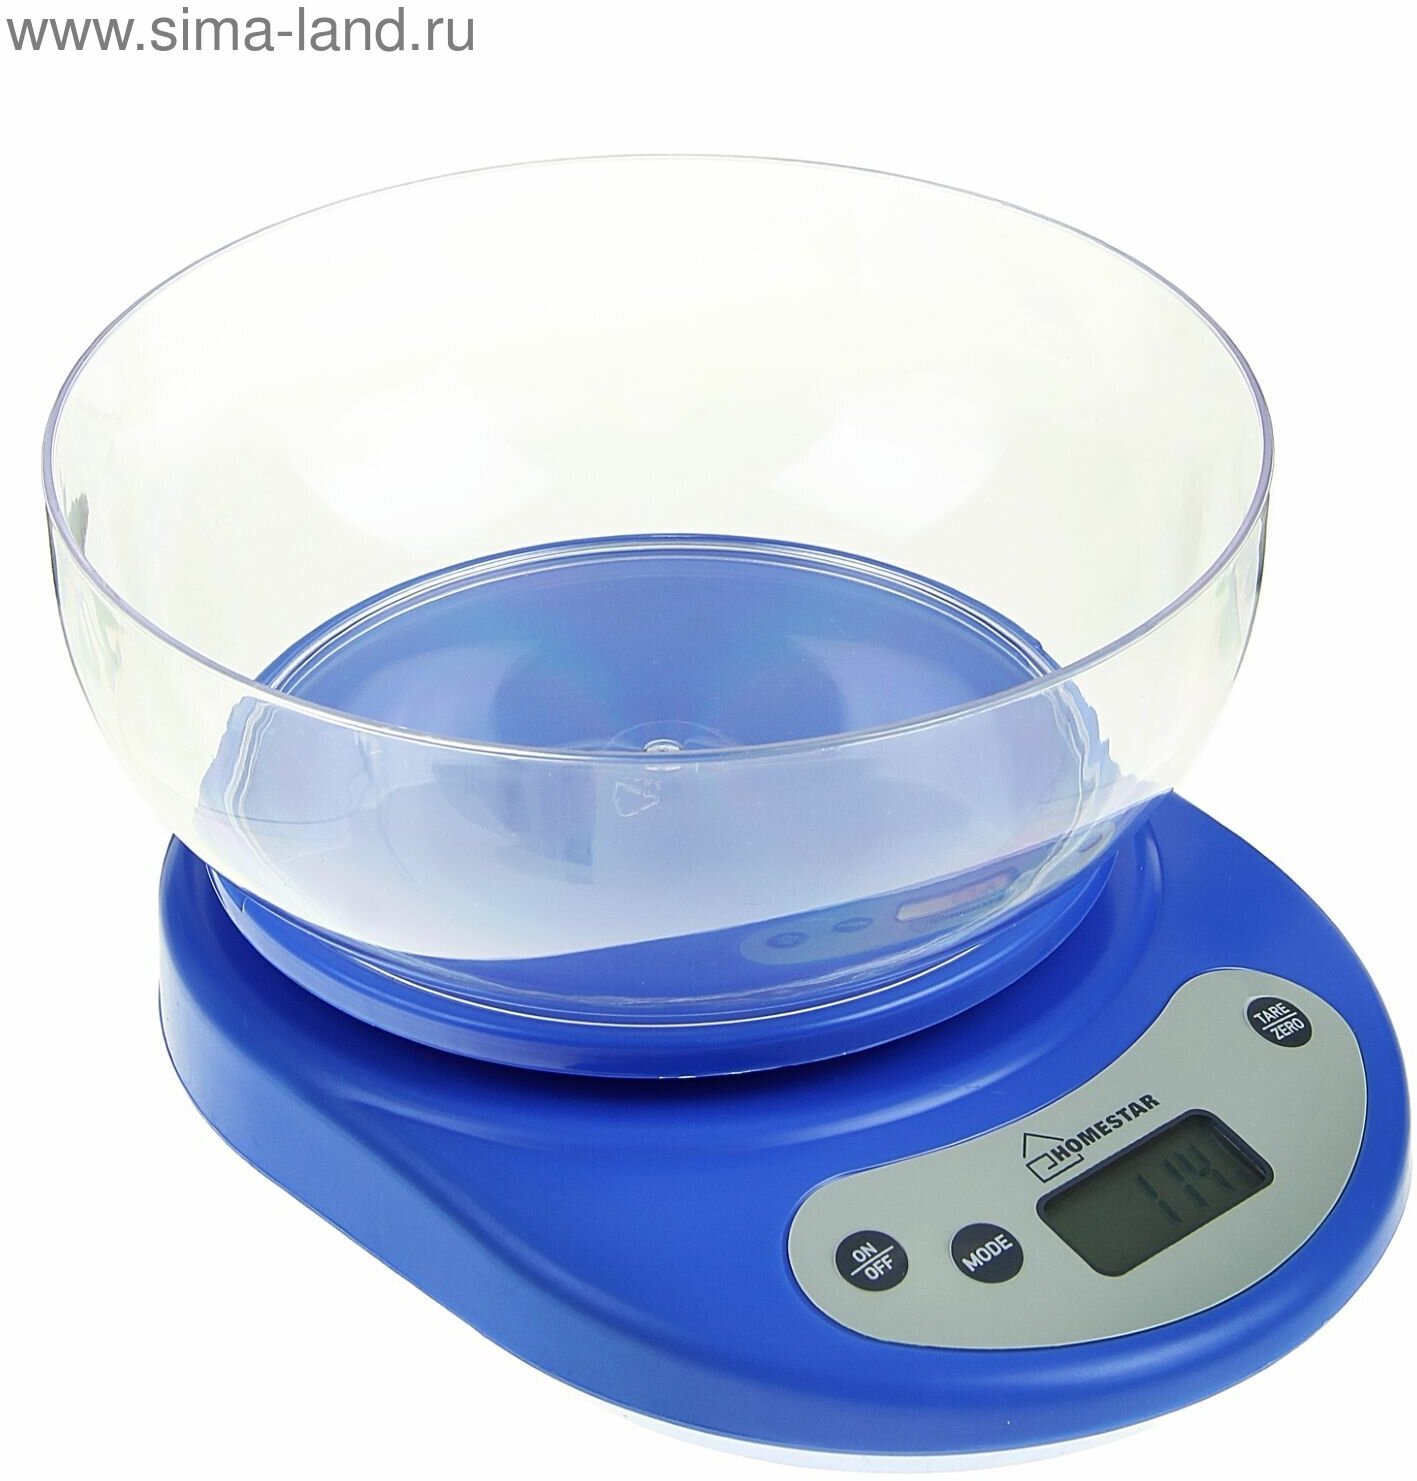 Весы кухонные HS-3001, электронные, до 5 кг, автоотключение, голубые